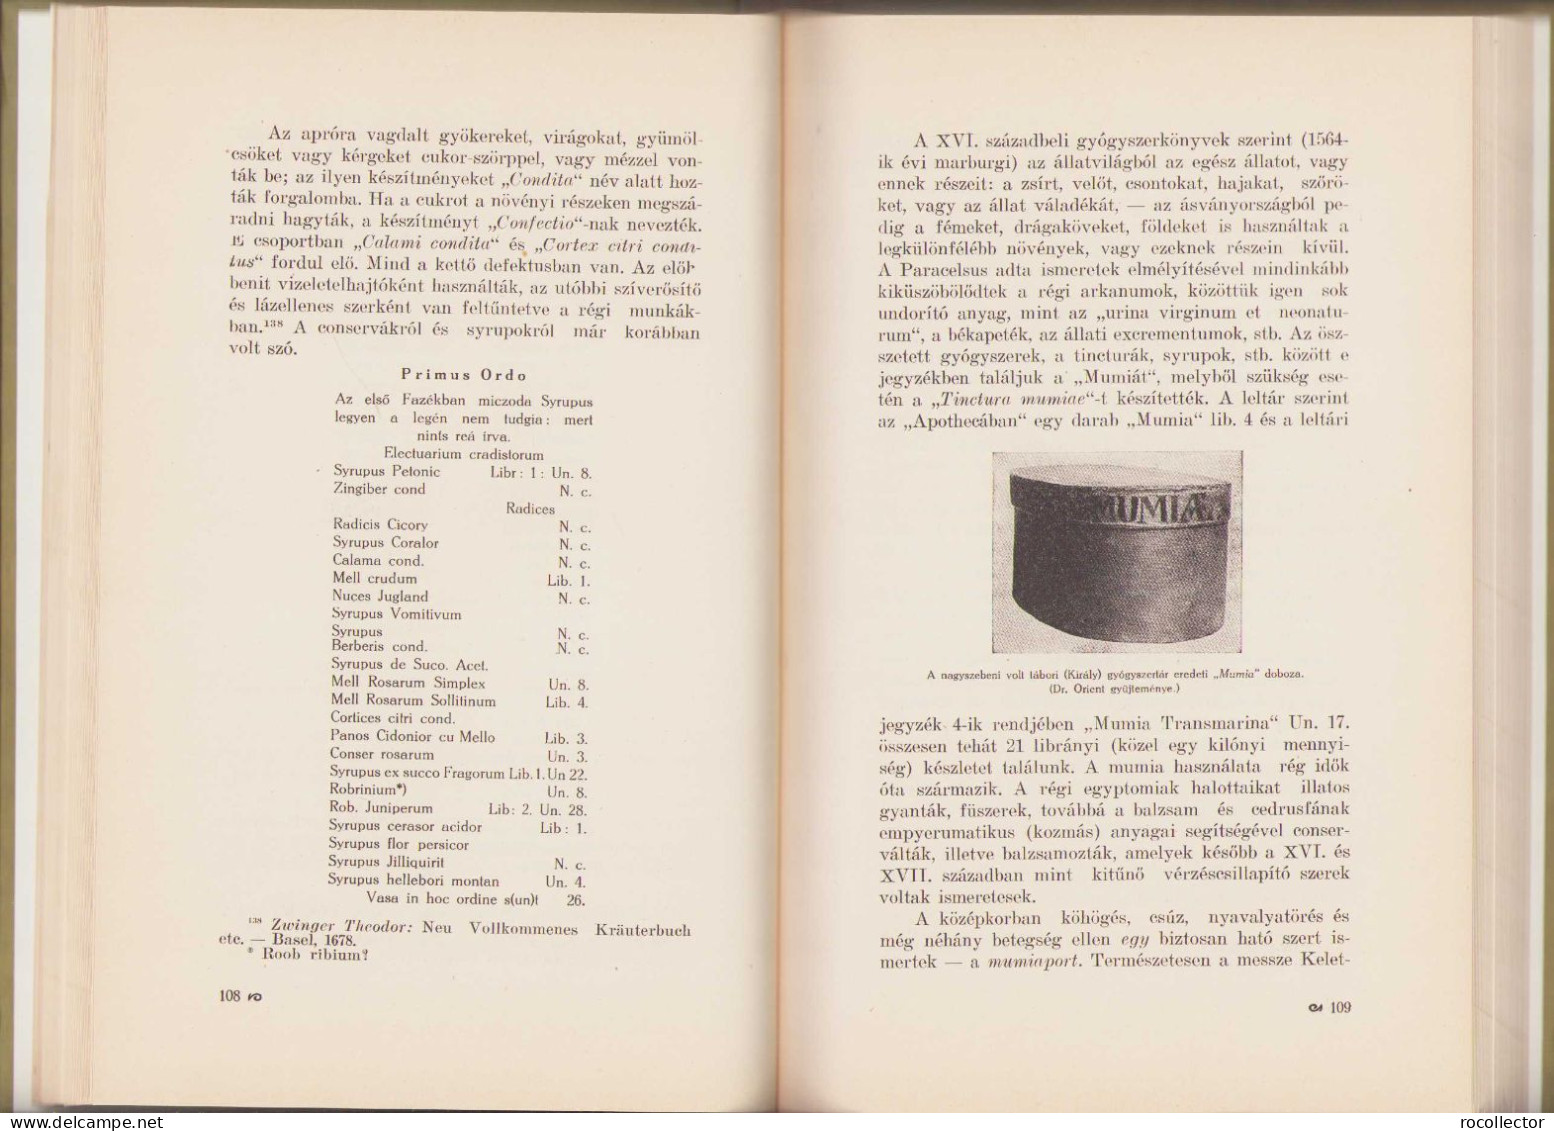 Az Erdély és Bánáti Gyógyszerészet Története Irta Orient Gyula 1928 Kolozsvar 118SP - Oude Boeken